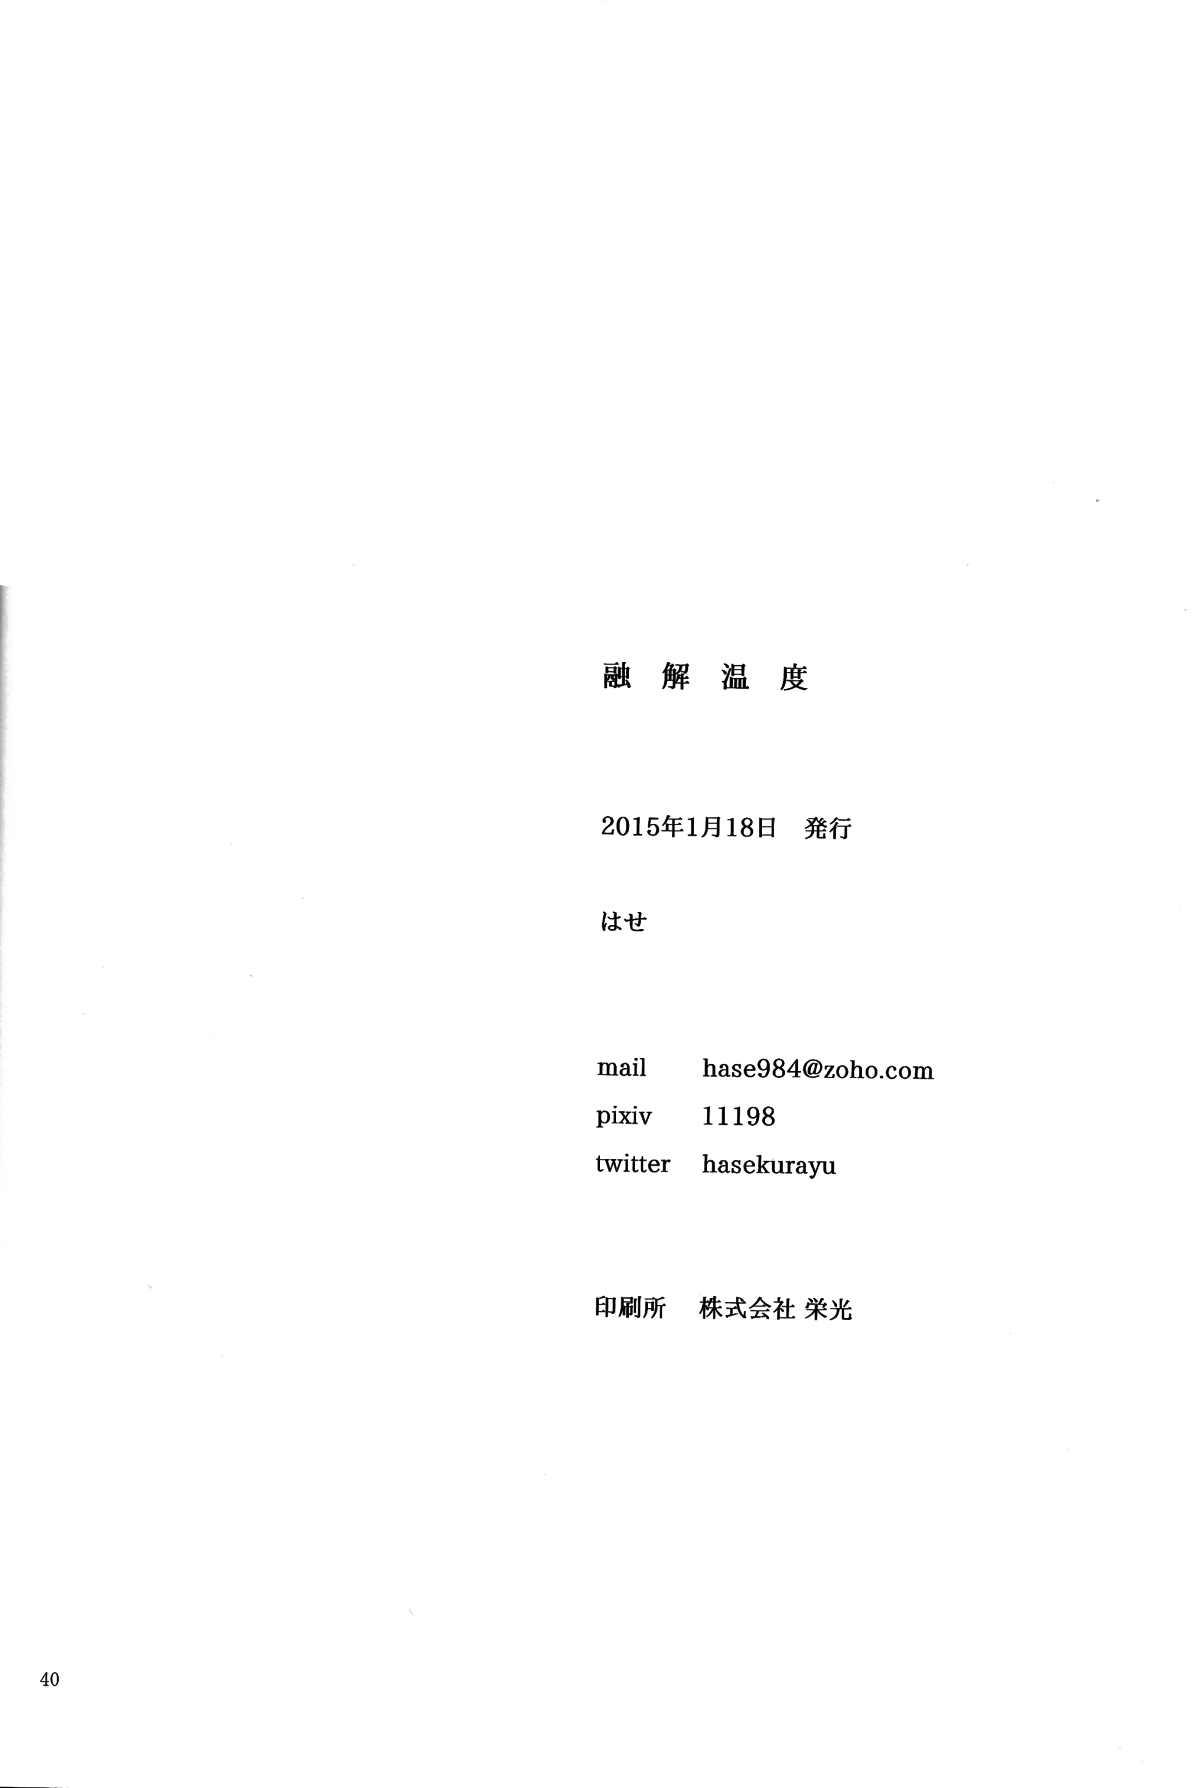 (ZERO no Hakobune) [Nagaya (Hase)] Yuukai Ondo - Melting Temperature (Aldnoah.Zero) [Chinese] [瑞利散射研究會feat.@AcSimmonsn汉化] (ZEROの方舟) [ながや (はせ)] 融解温度 (アルドノア・ゼロ) [中国翻訳]